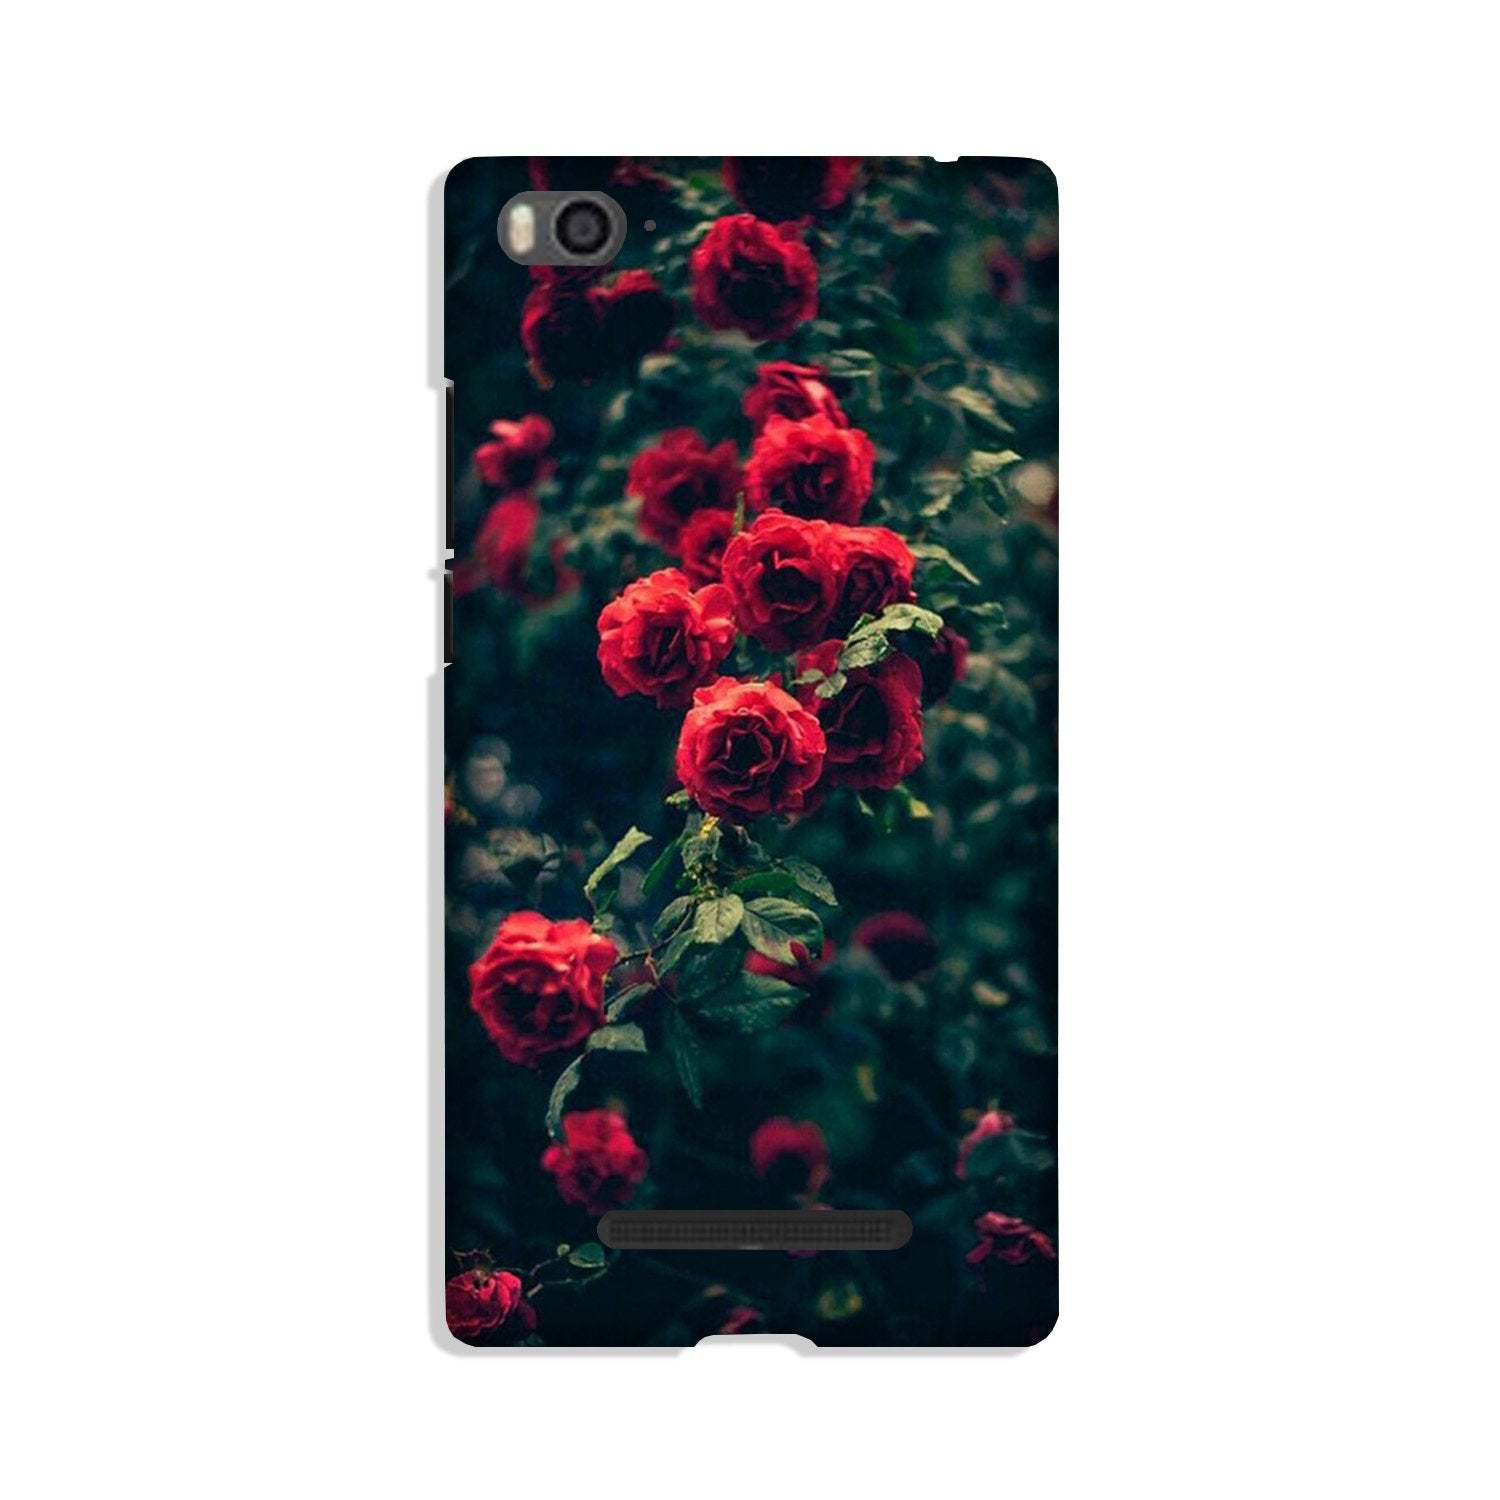 Red Rose Case for Xiaomi Mi 4i